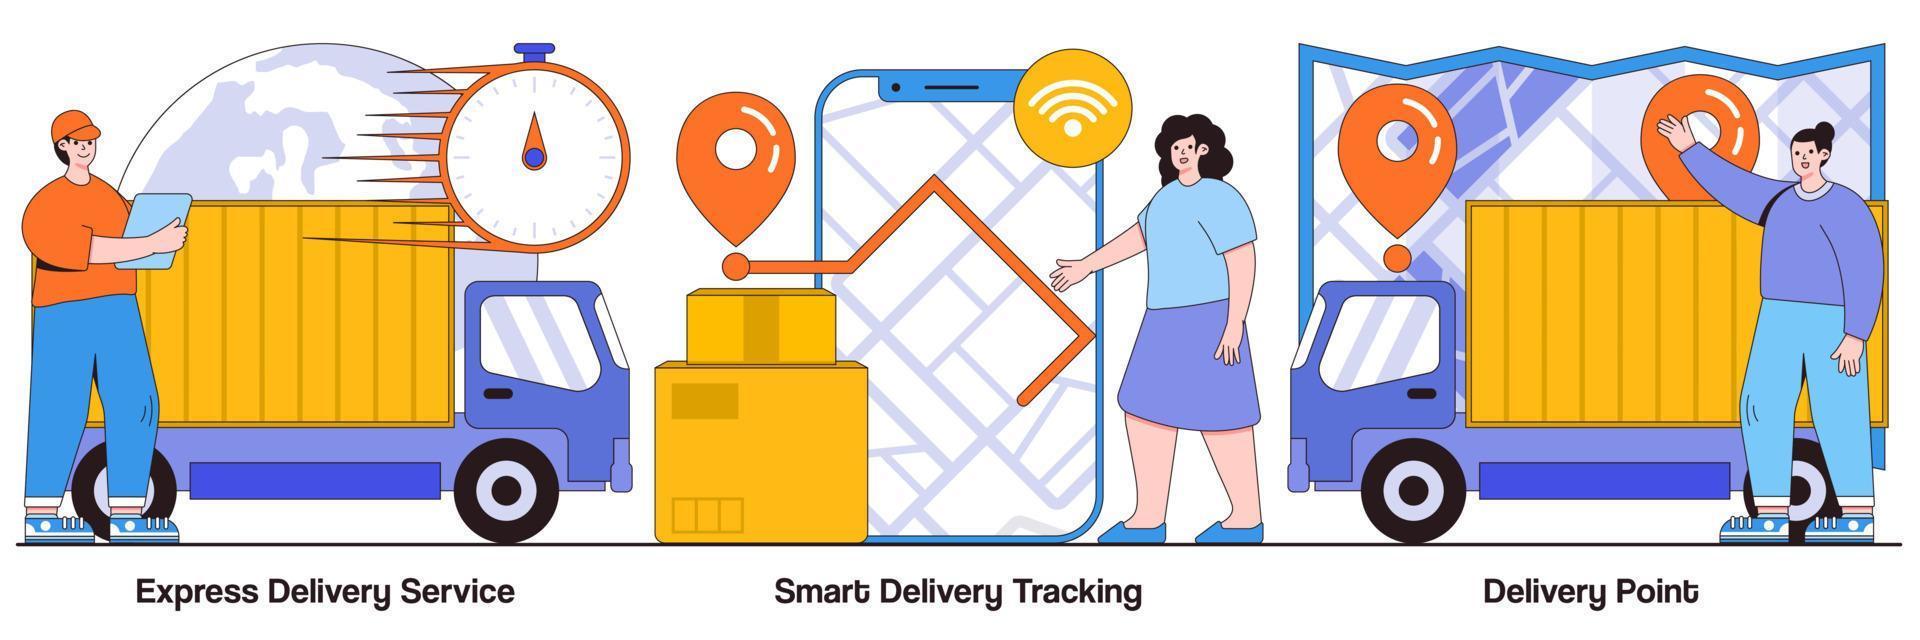 paquete ilustrado de entrega urgente, seguimiento inteligente en línea, mensajería y punto de entrega de pedidos vector